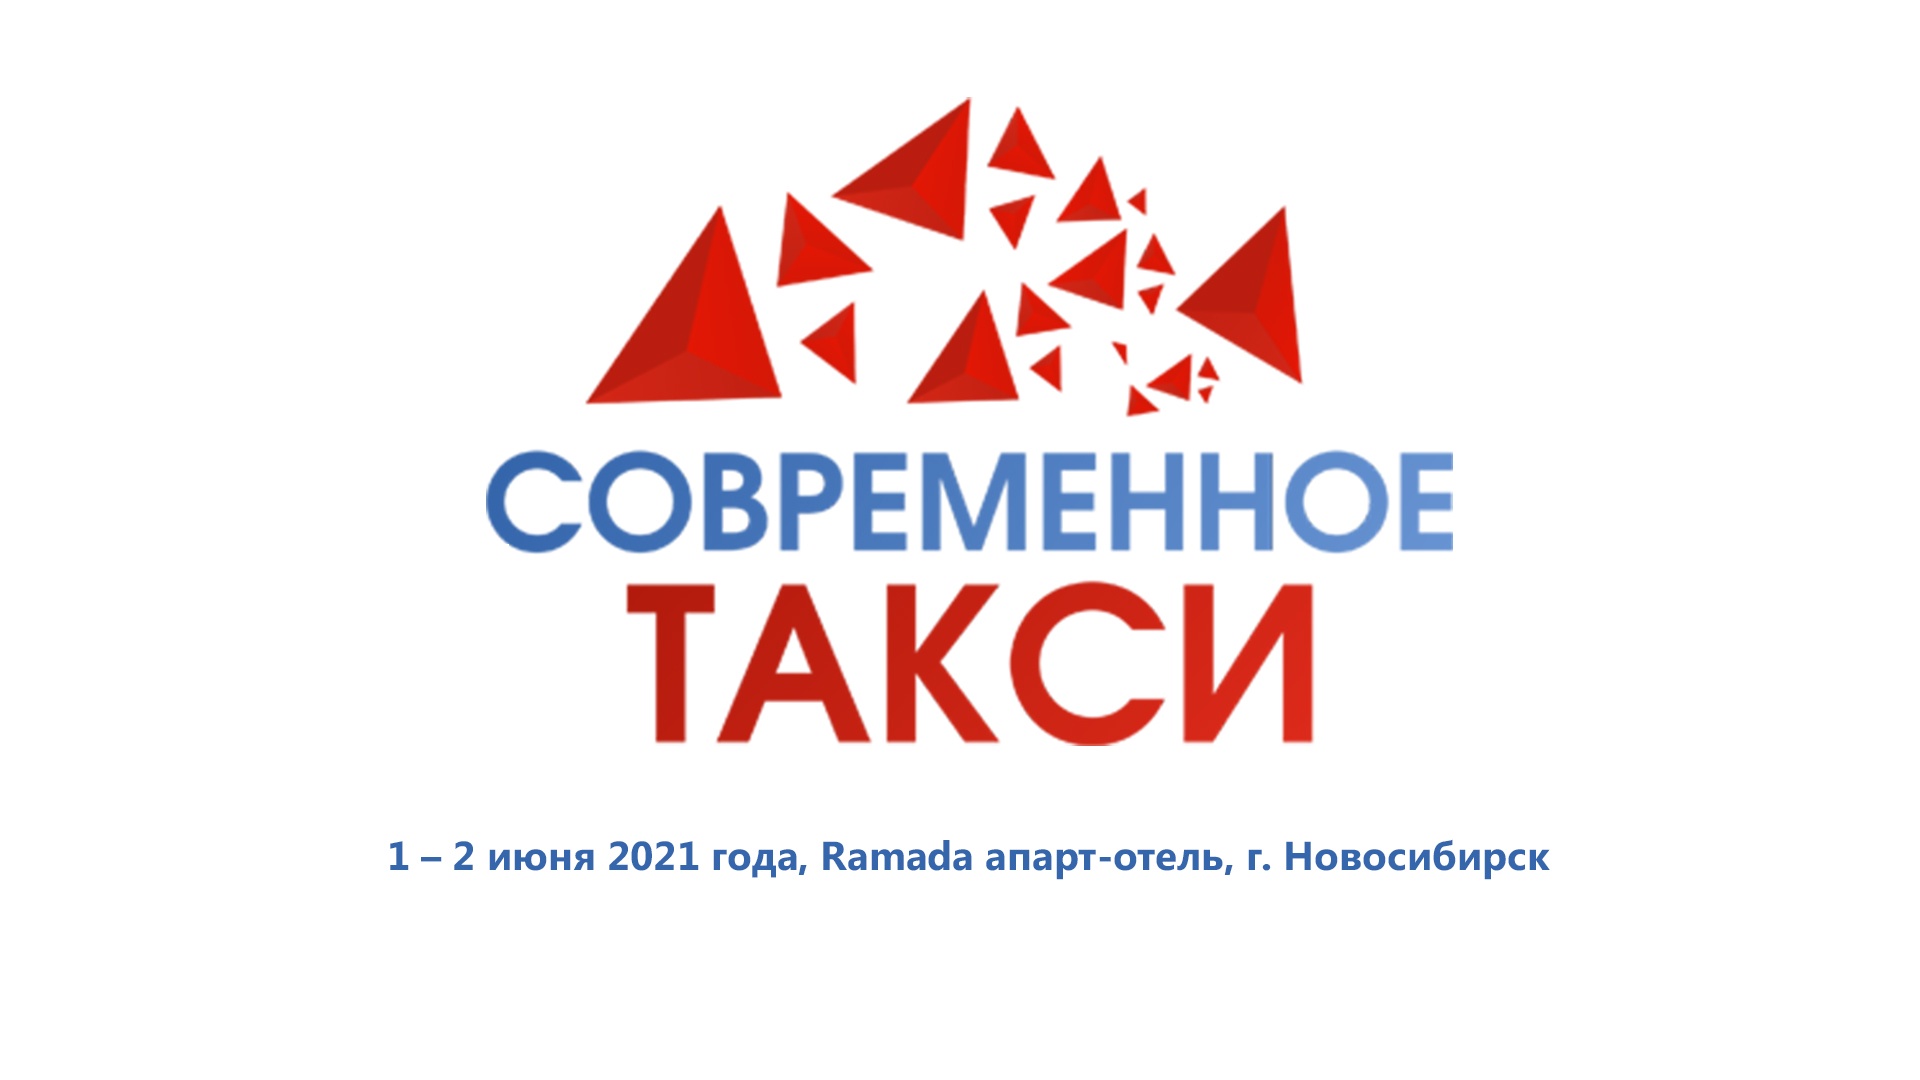 Открыта регистрация на участие в VIII Конференции «Современное такси. Бизнес-прокачка» в Новосибирске 01-02 июня